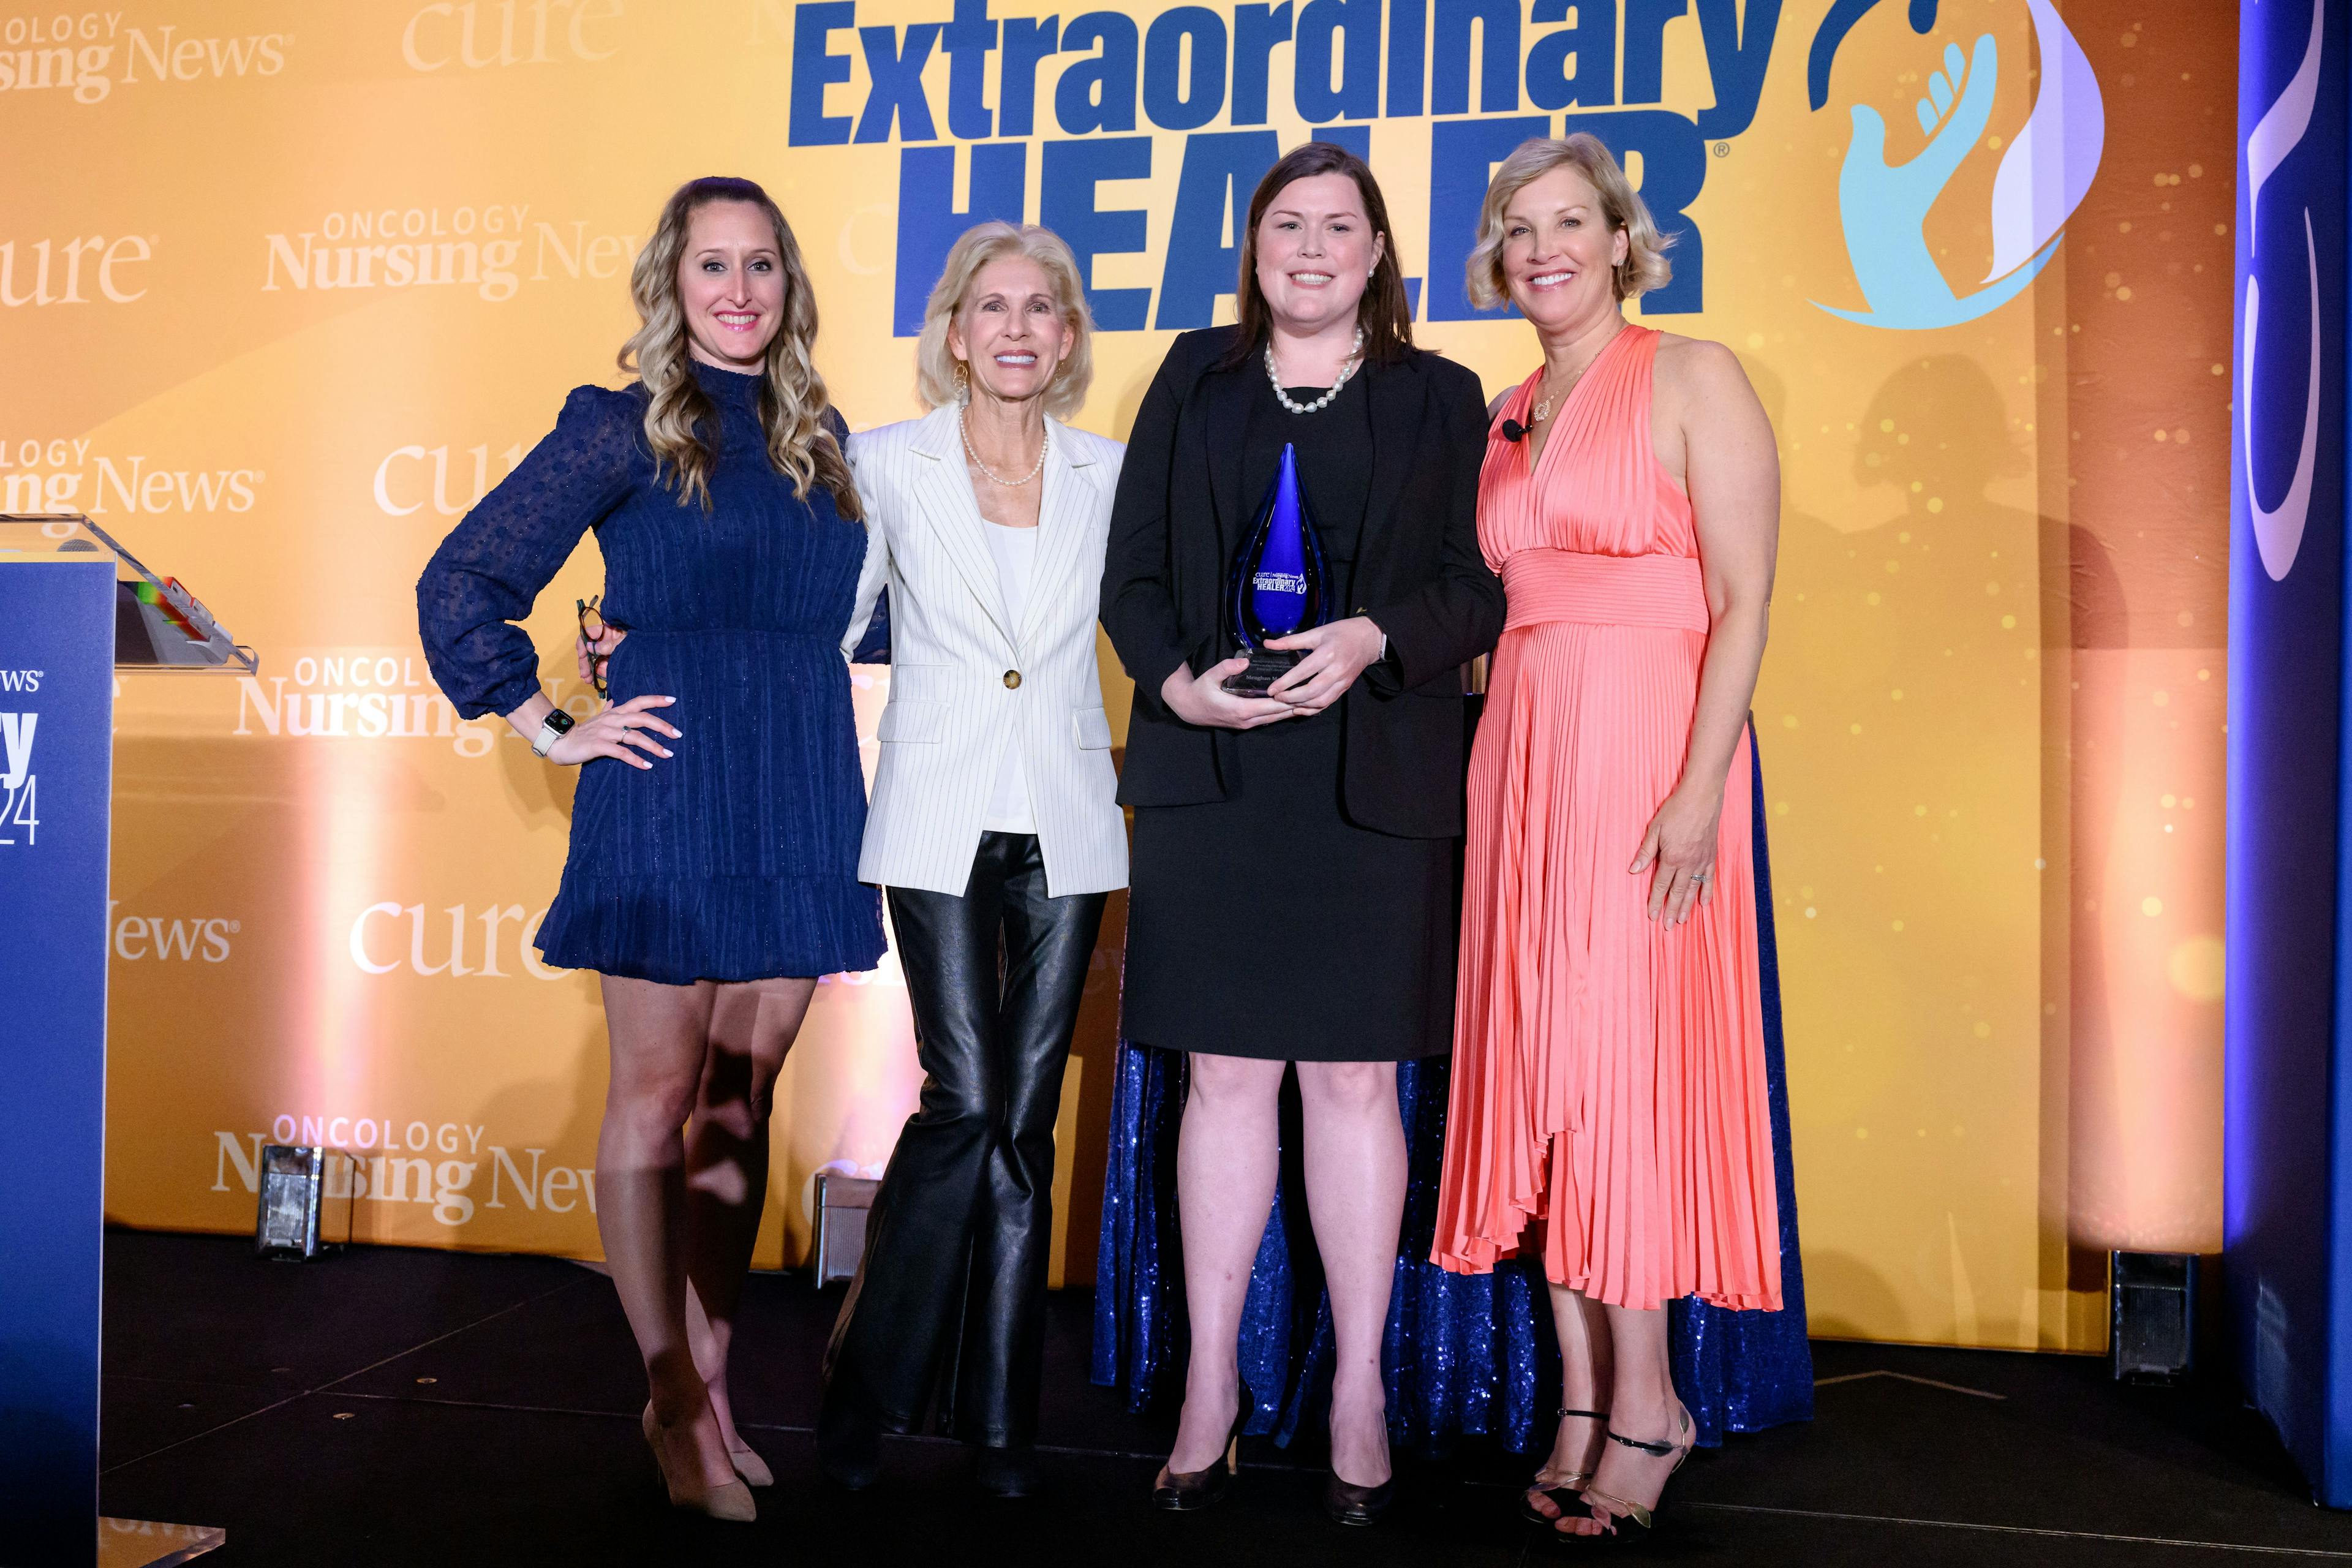 Meaghan Mooney, B.S.N., RN, OCN, receives the 2024 Extraordinary Healer® award.

From left: Kristie L. Kahl; Meredith Cooper; Meaghan Mooney, B.S.N., RN, OCN; and Kristen Dahlgren